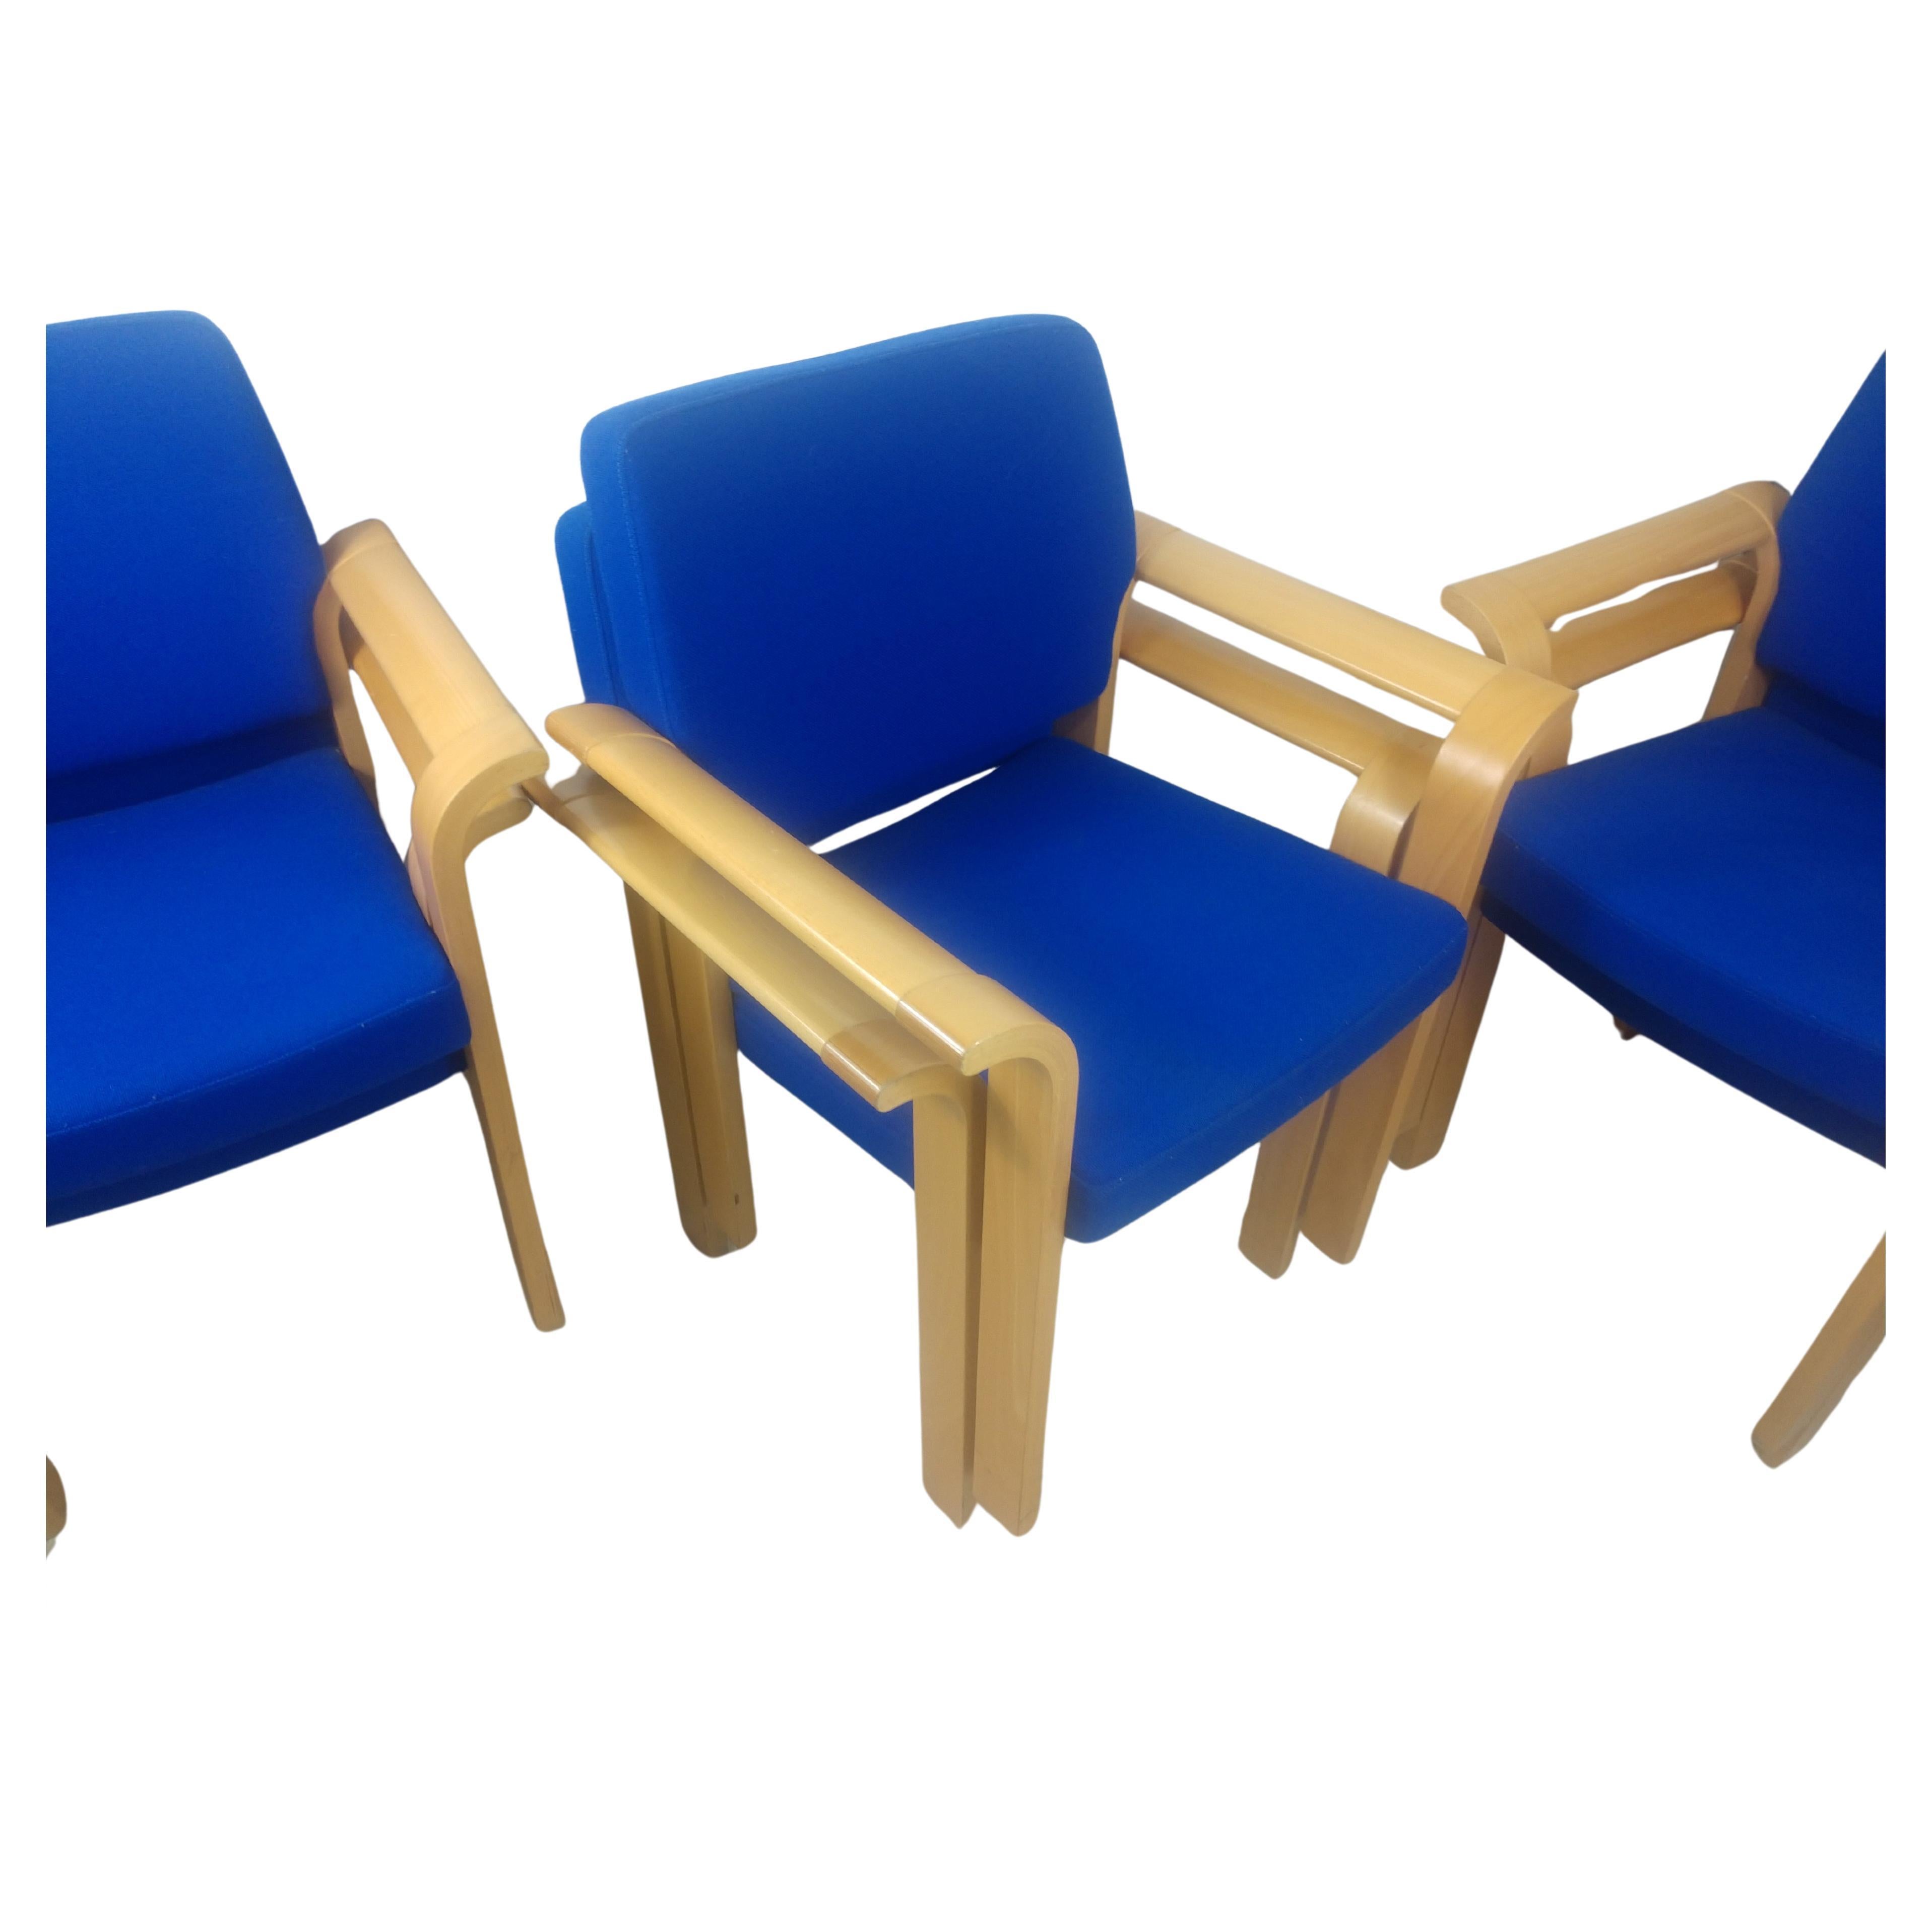 Fabuleux ensemble de chaises de conférence en chêne du milieu du siècle qui s'empilent. Les bras évasés en bois courbé ont été créés en chêne blanc et sont recouverts d'un tissu bleu semblable à celui d'un knoll. Conçu par Rud Thygesen et Johnny